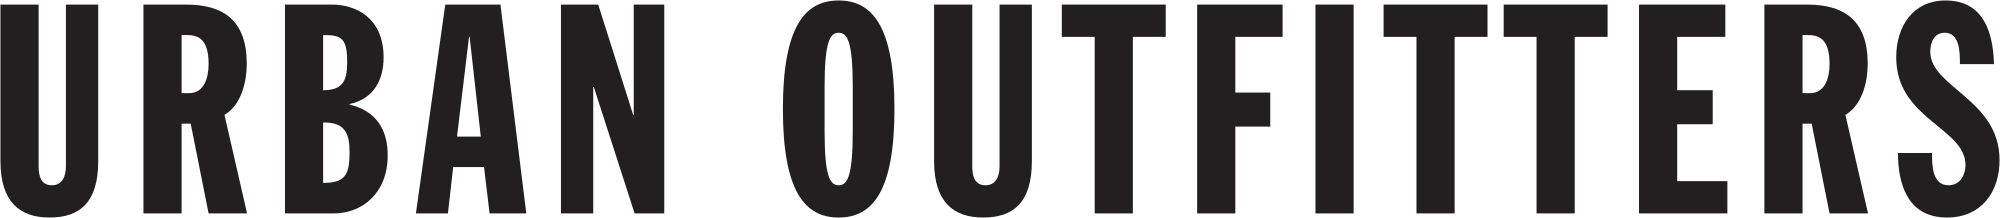 Urban Outfitters Logo - Urban Outfitters logo.svg